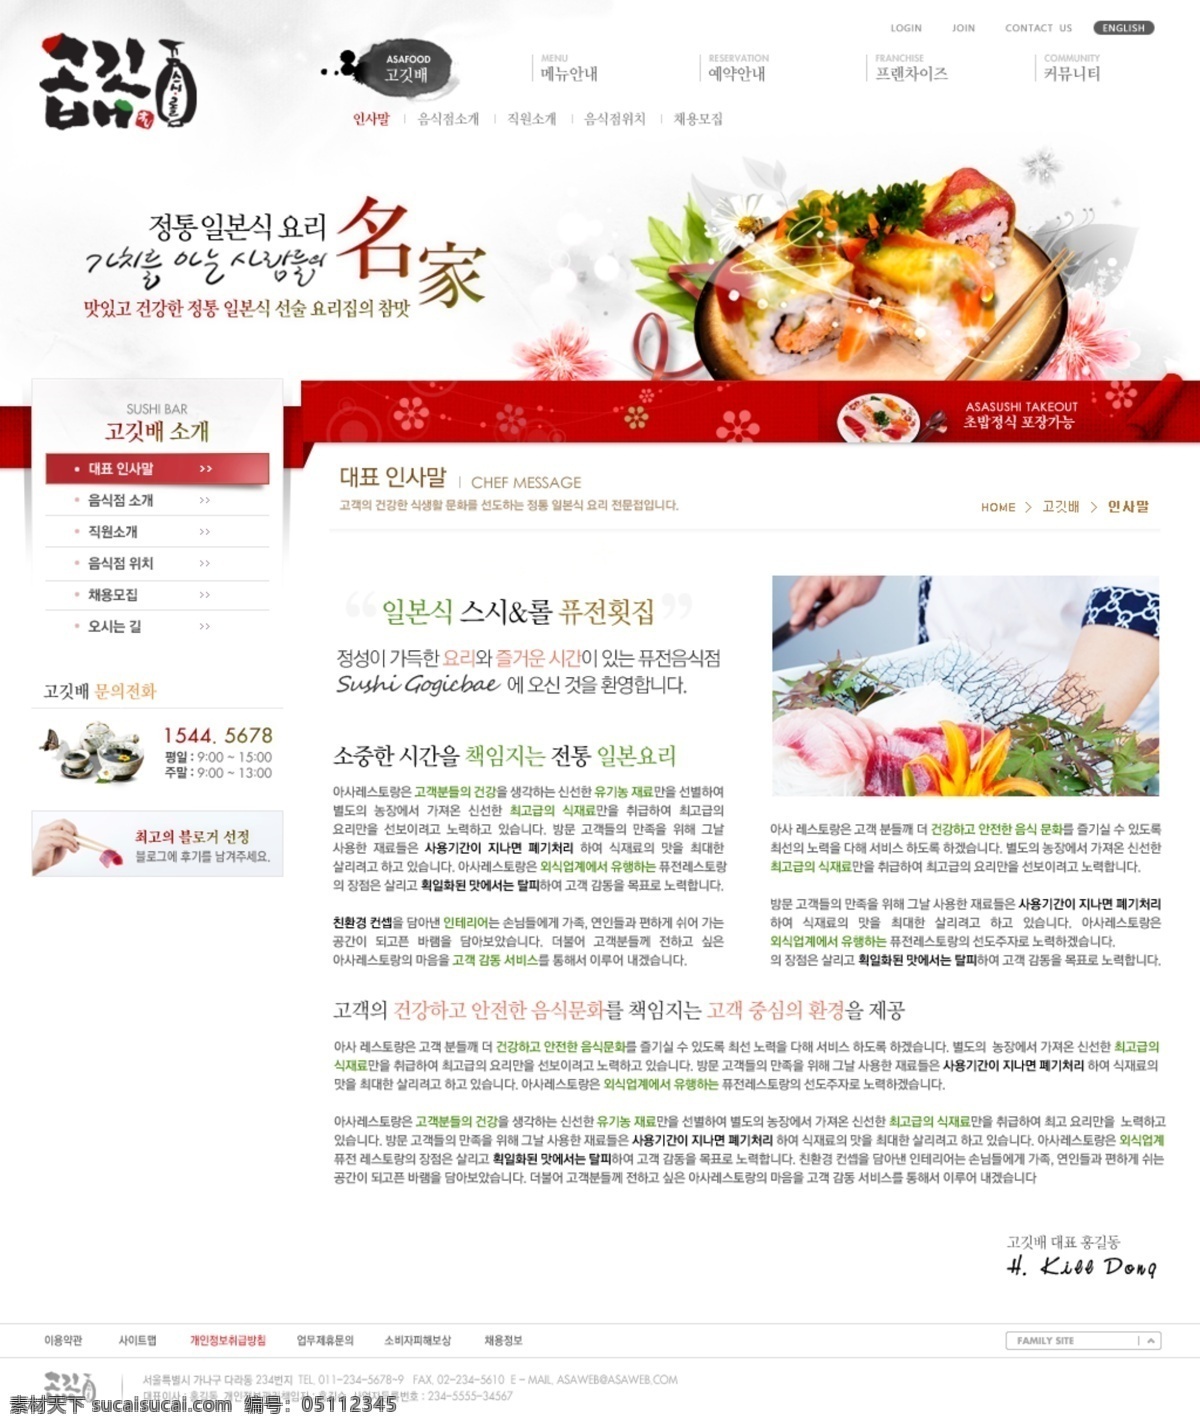 分层 ui设计 版式设计 菜品 菜肴 韩国模板 红色 界面设计 餐厅 饭店 网页设计 源文件 网页模板 网页界面 网页版式 美食 食物 食品 日式 料理 日本 水墨 韩文模板 web 网页素材 其他网页素材